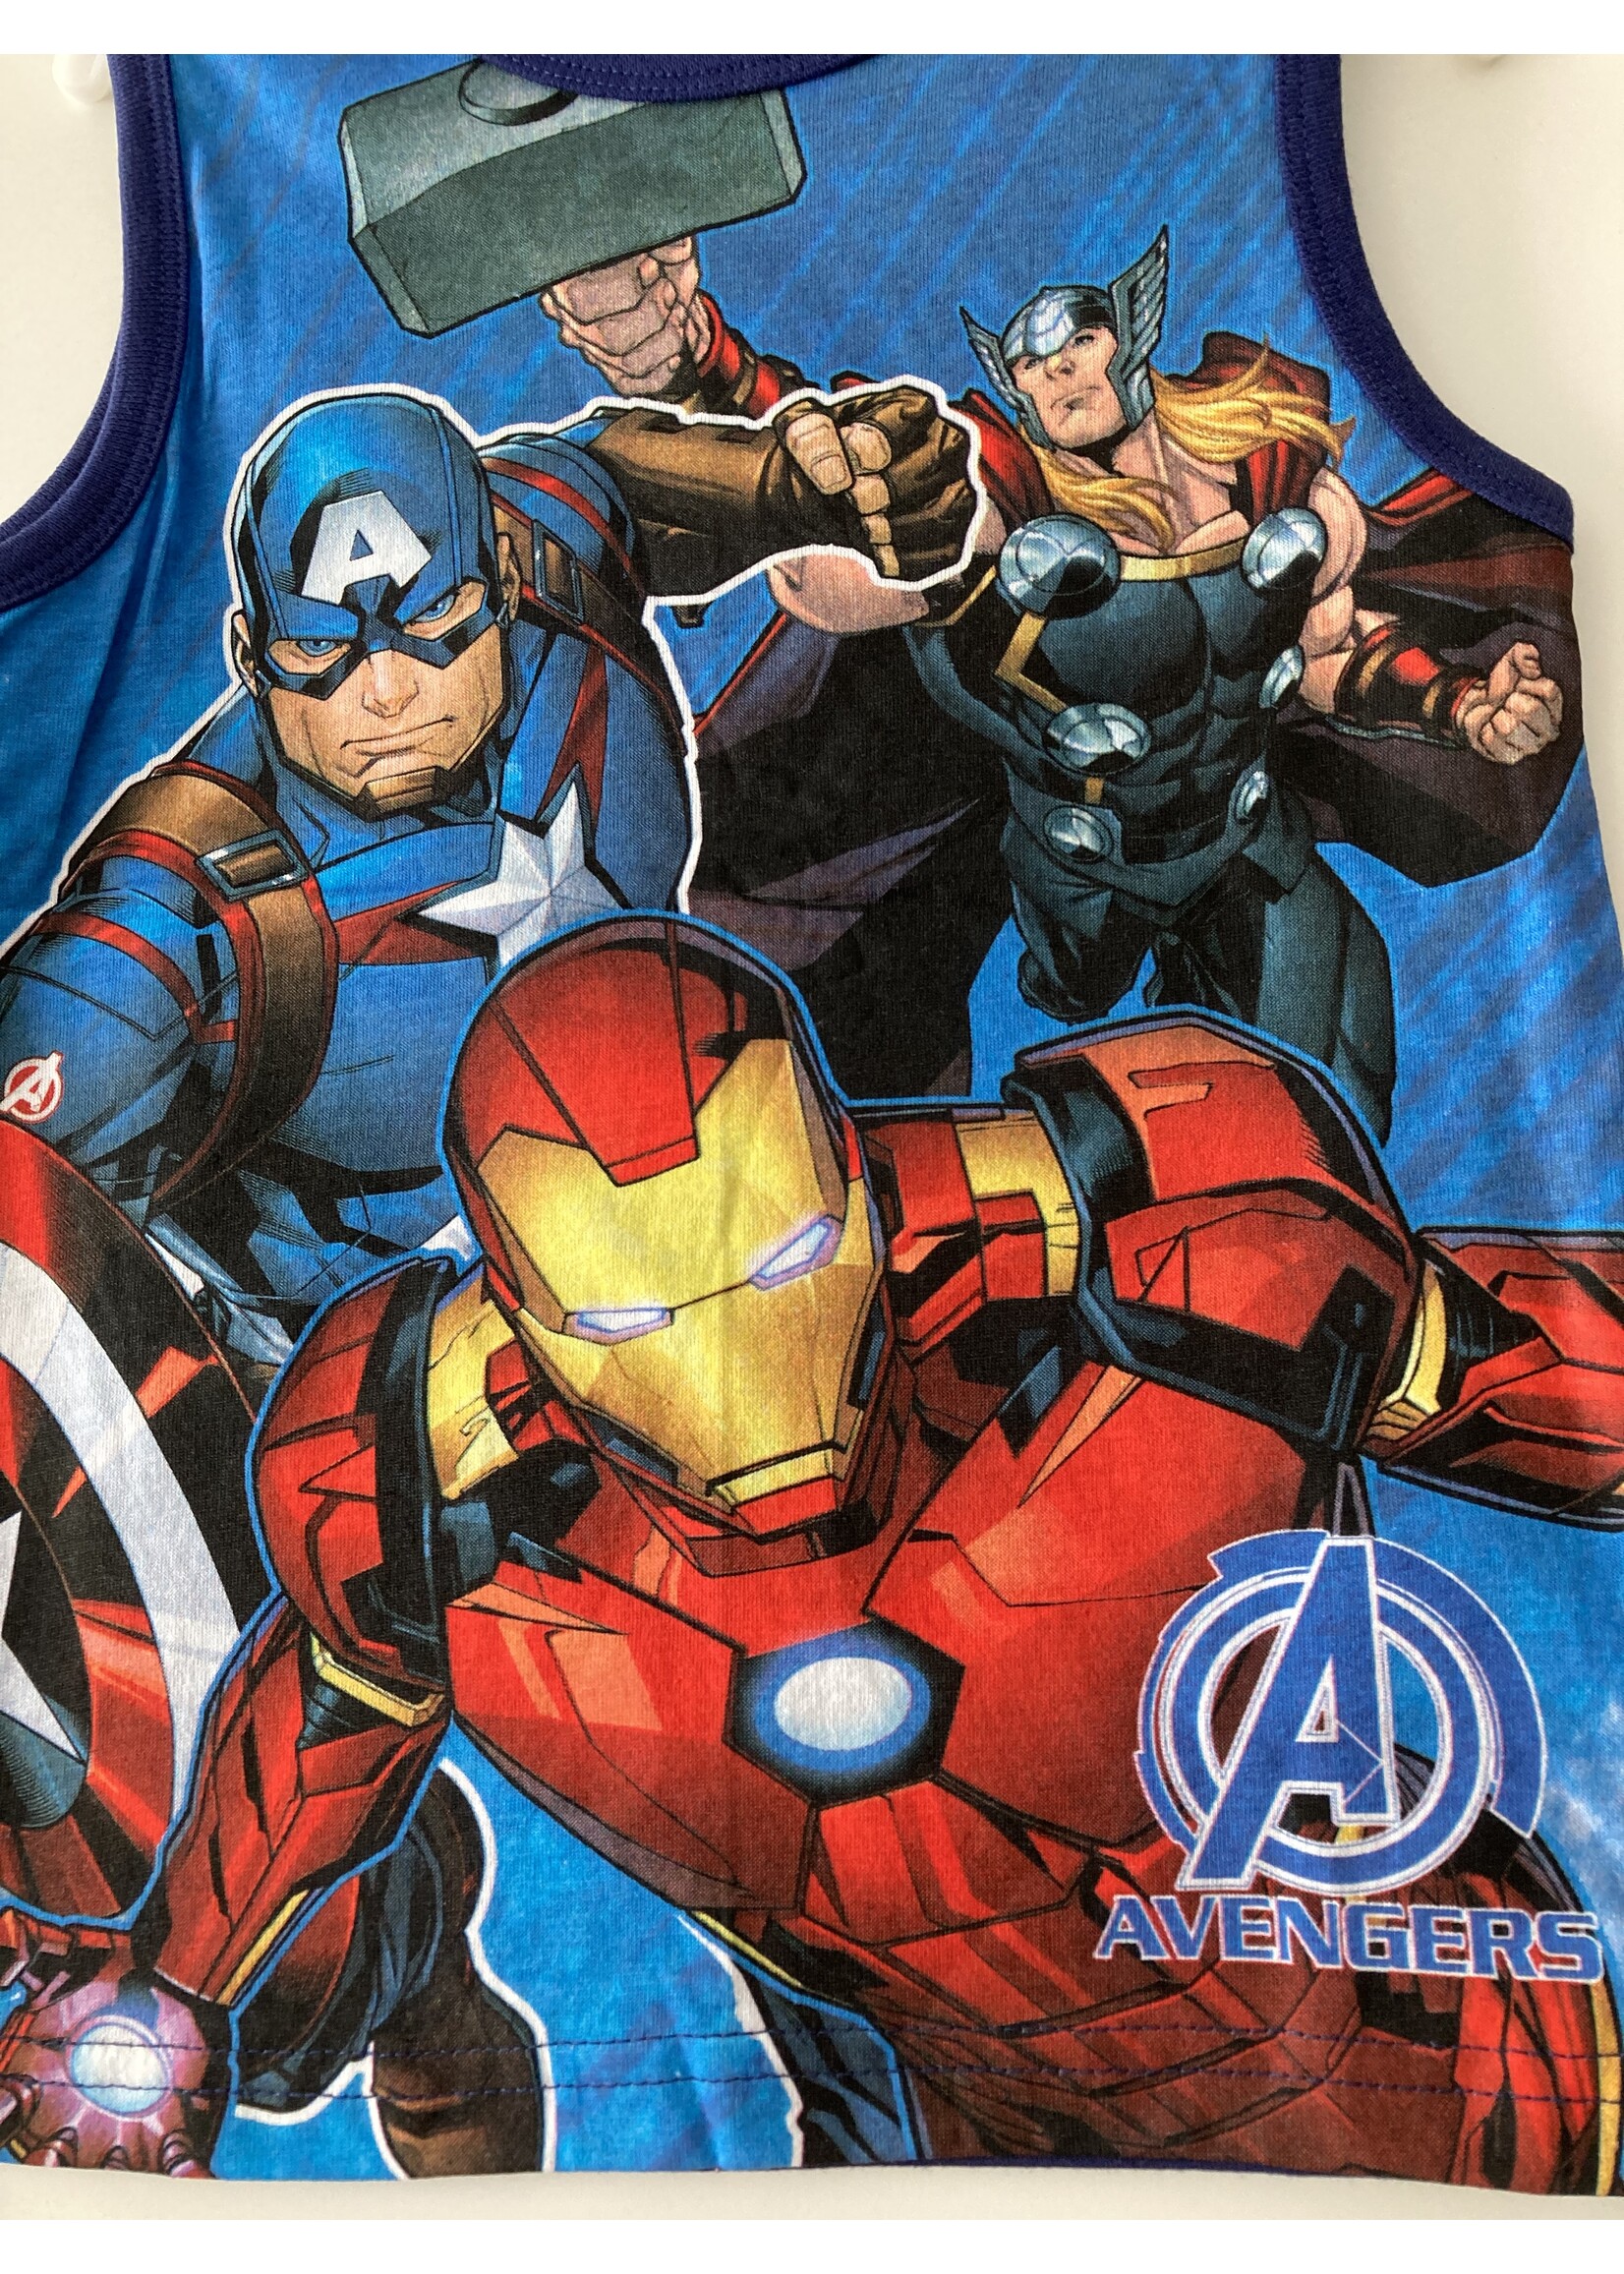 Marvel Avengers sleeveless shirt from Marvel blue